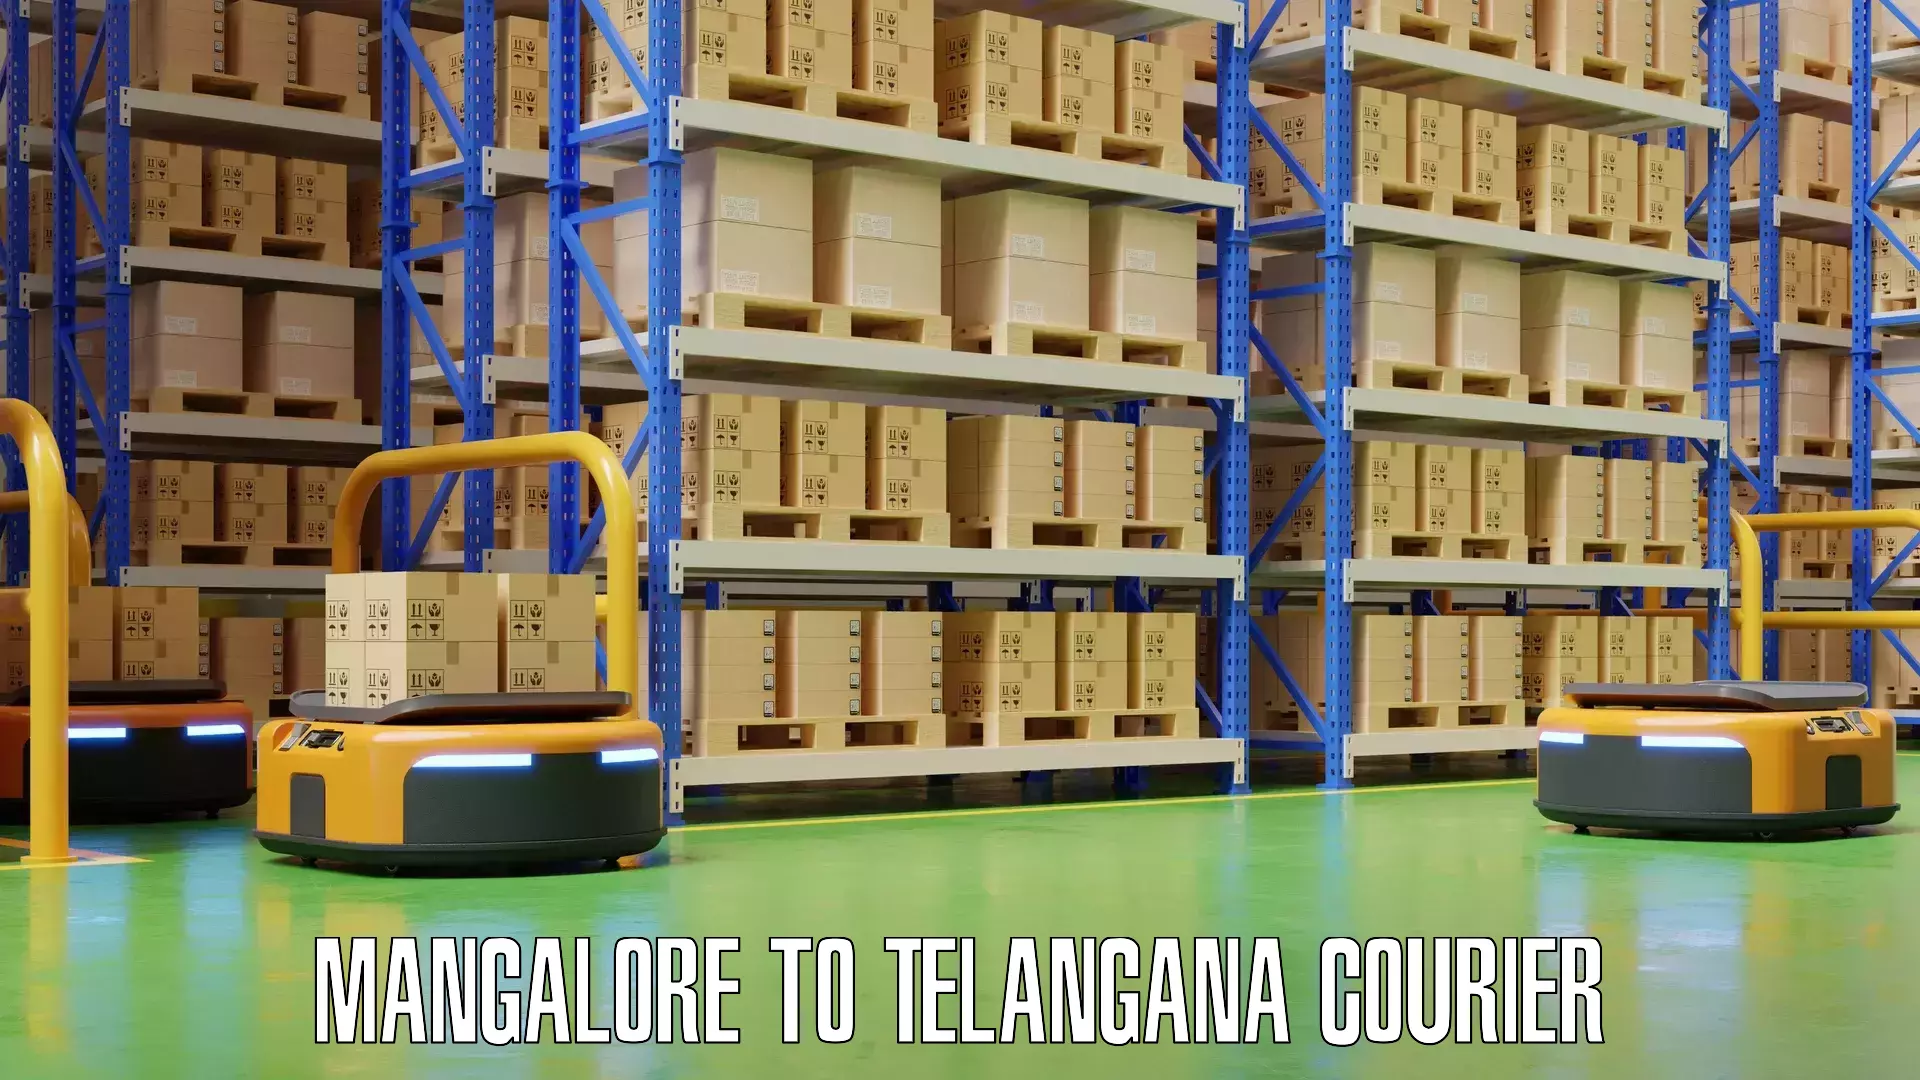 Baggage transport network Mangalore to Telangana